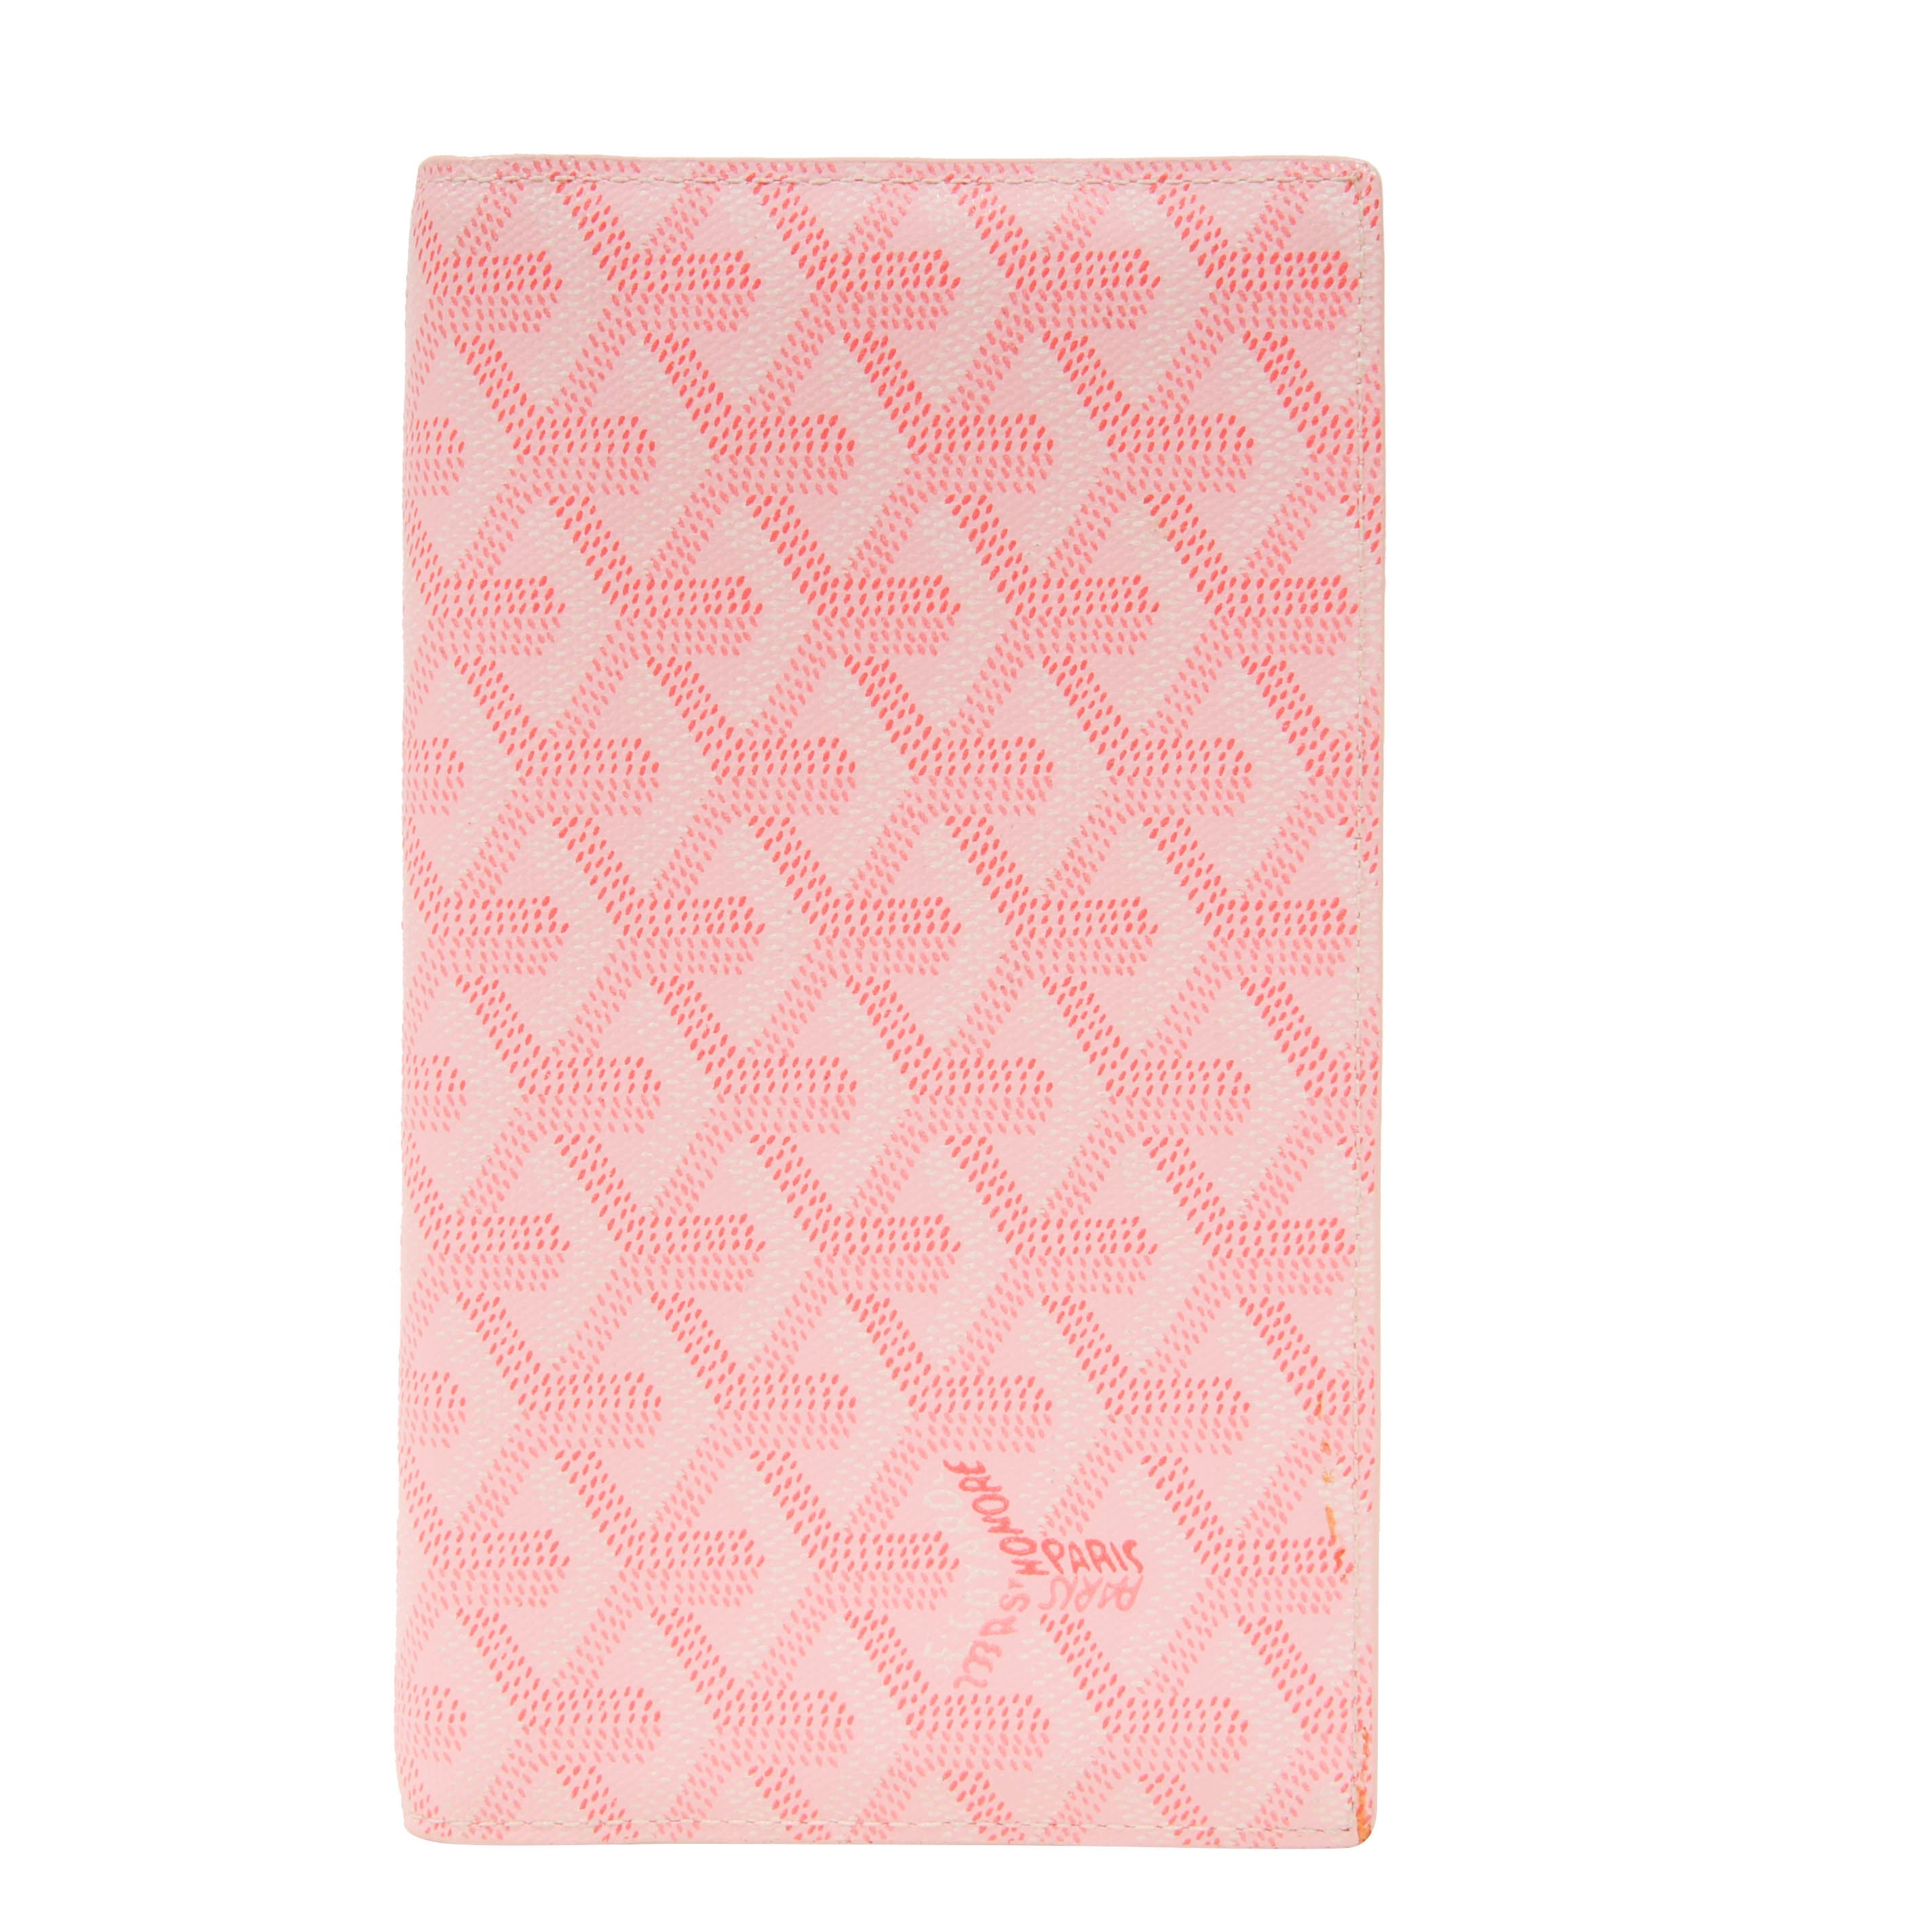 Goyard Pink Card Holder